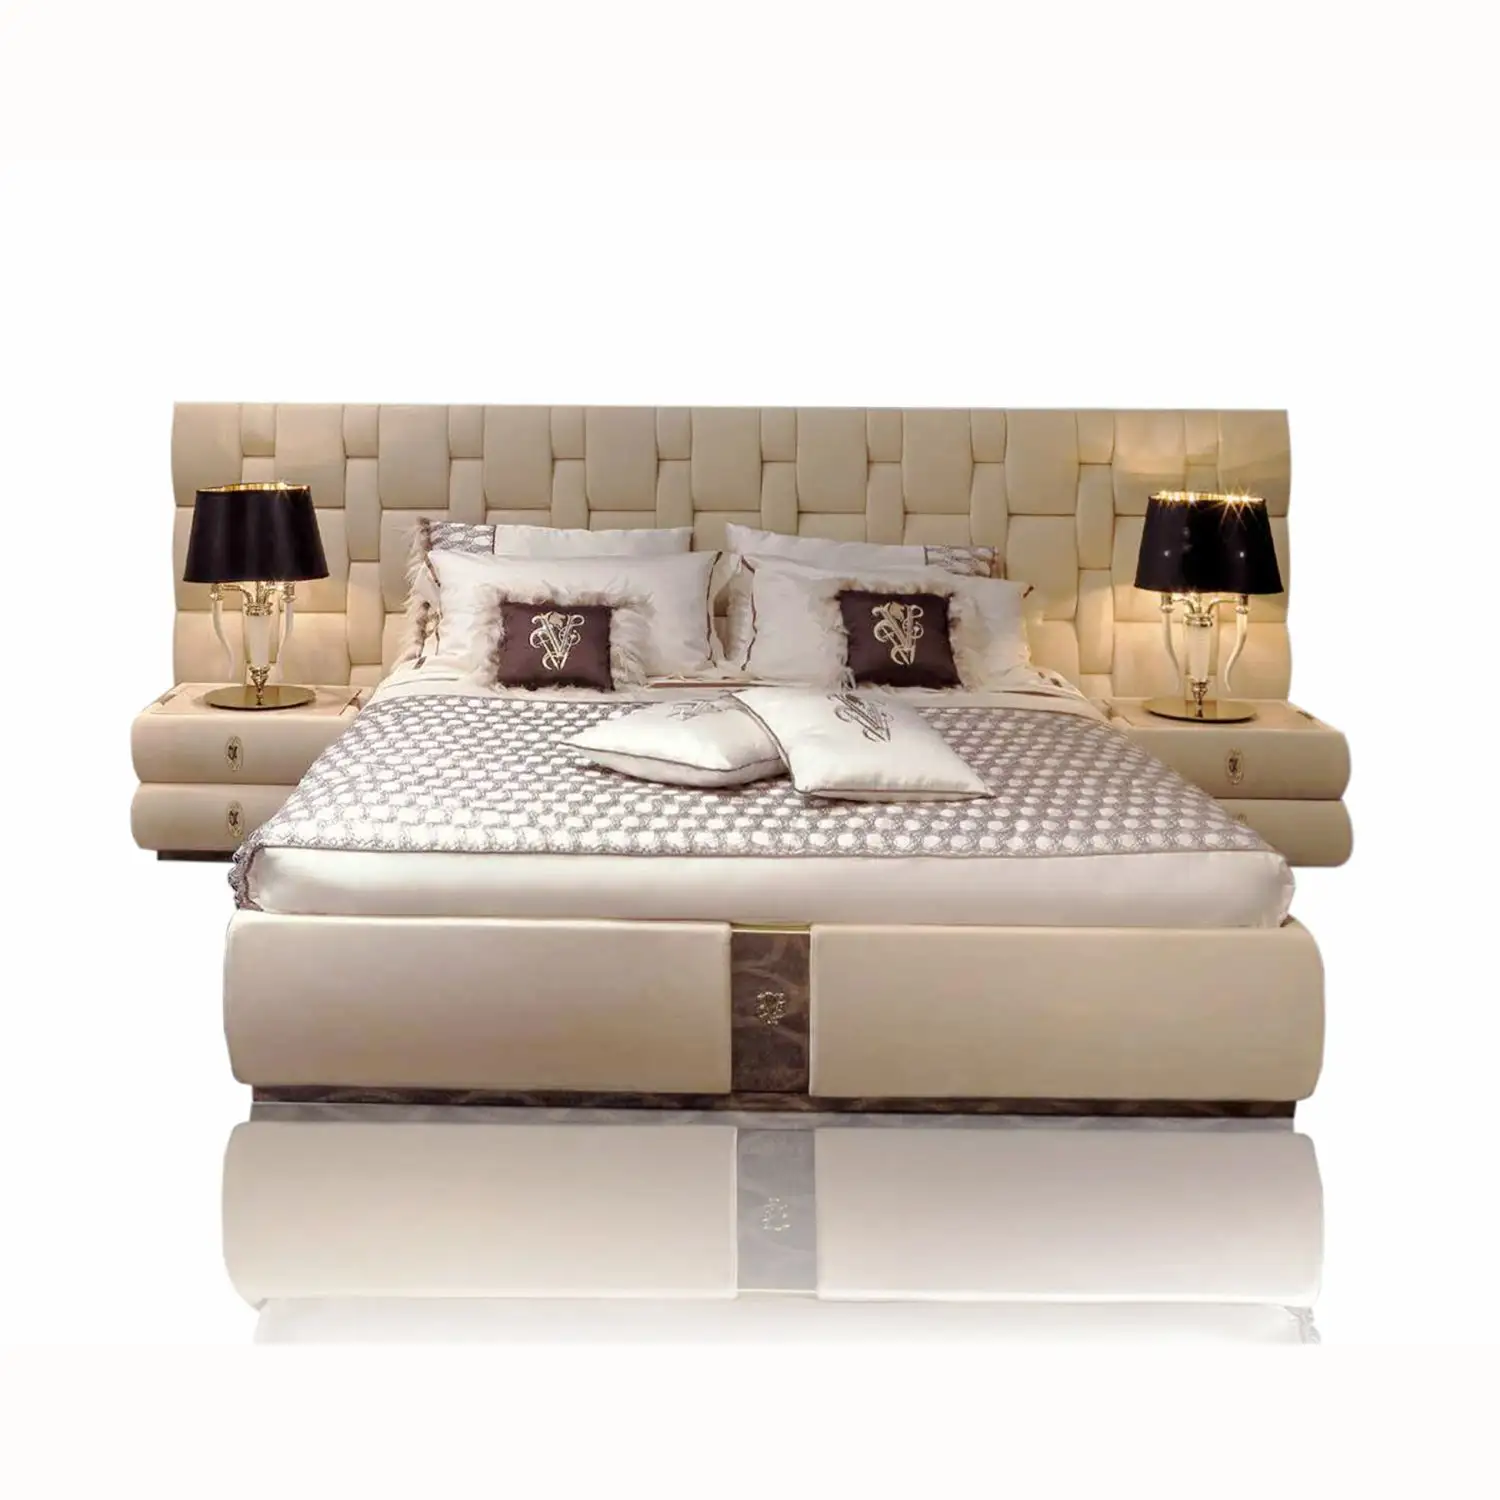 سرير مفروش مرتفع مقاس كبير إطار رمادي قماش بتصميم إيطالي غرفة نوم مع لوح رأس من القماش المخملي مخصص